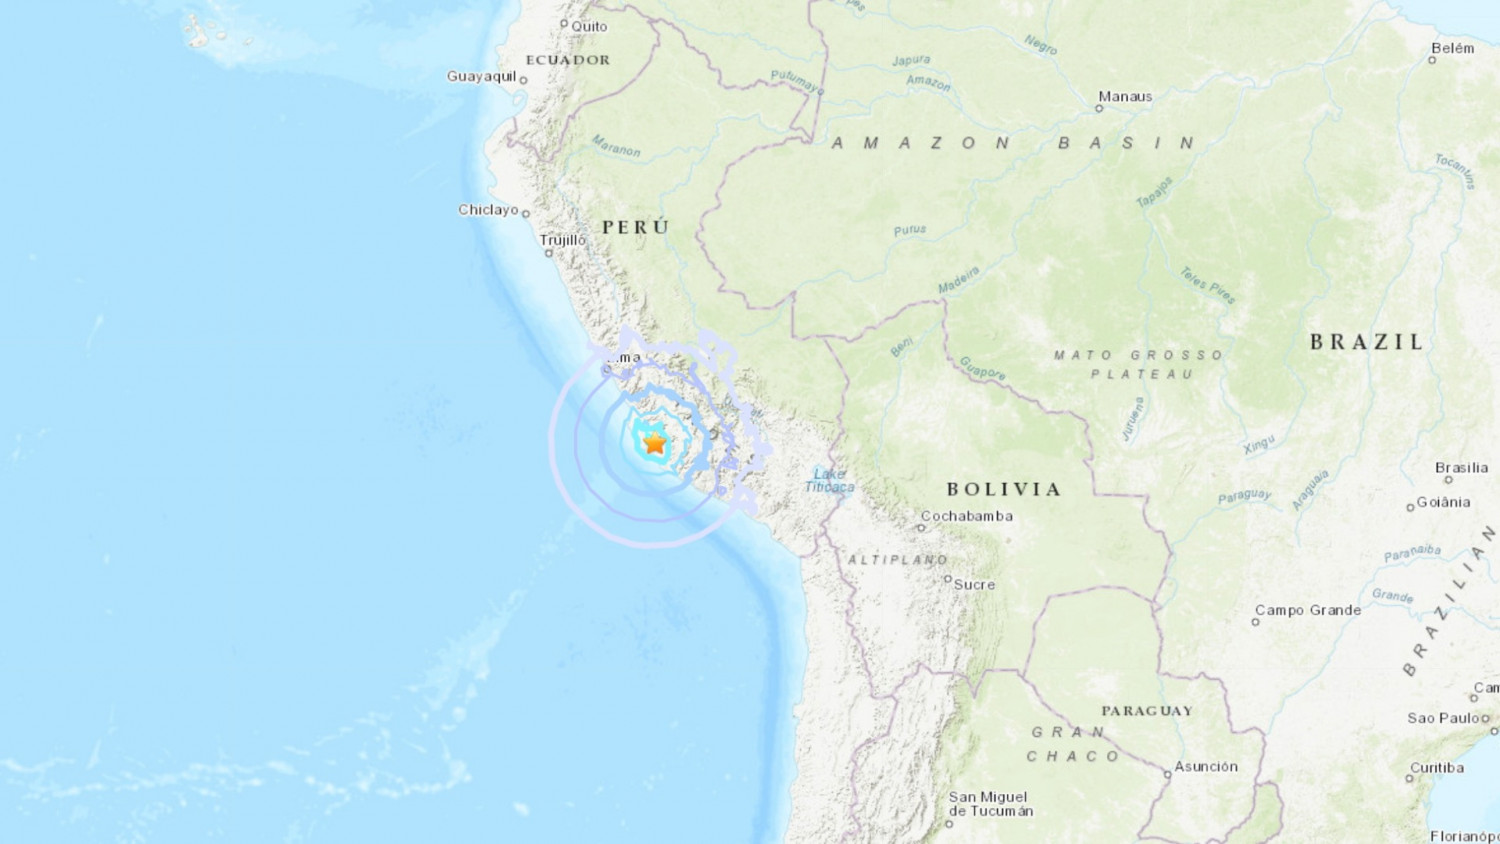 Magnitude 5.6 Earthquake Strikes Near Coast of Peru